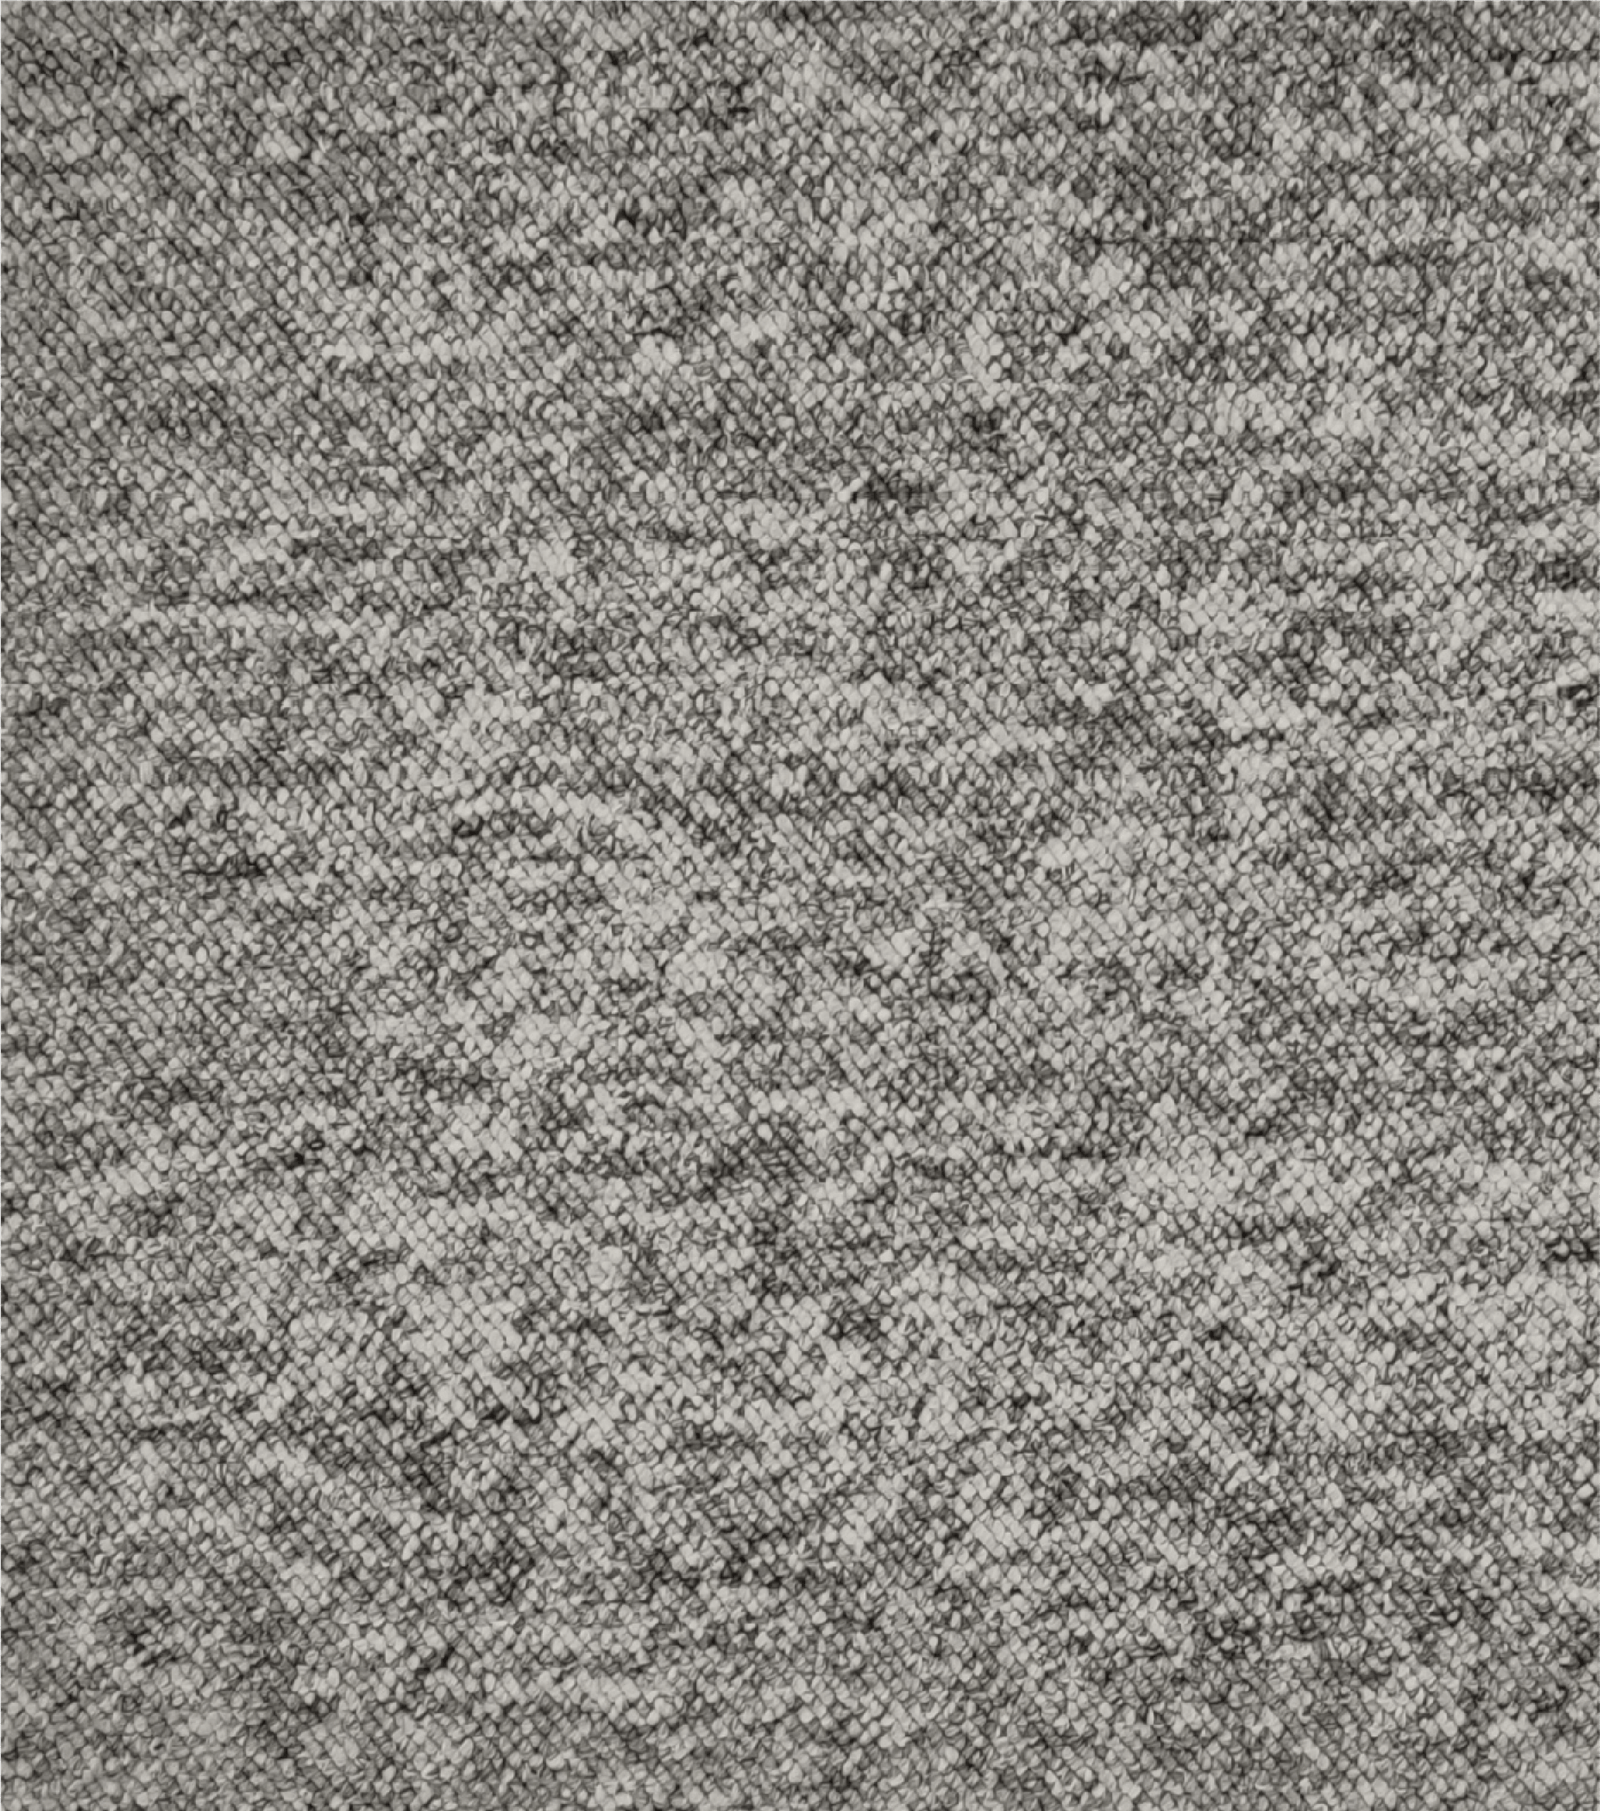 Loop Pile Carpet-STRABIL